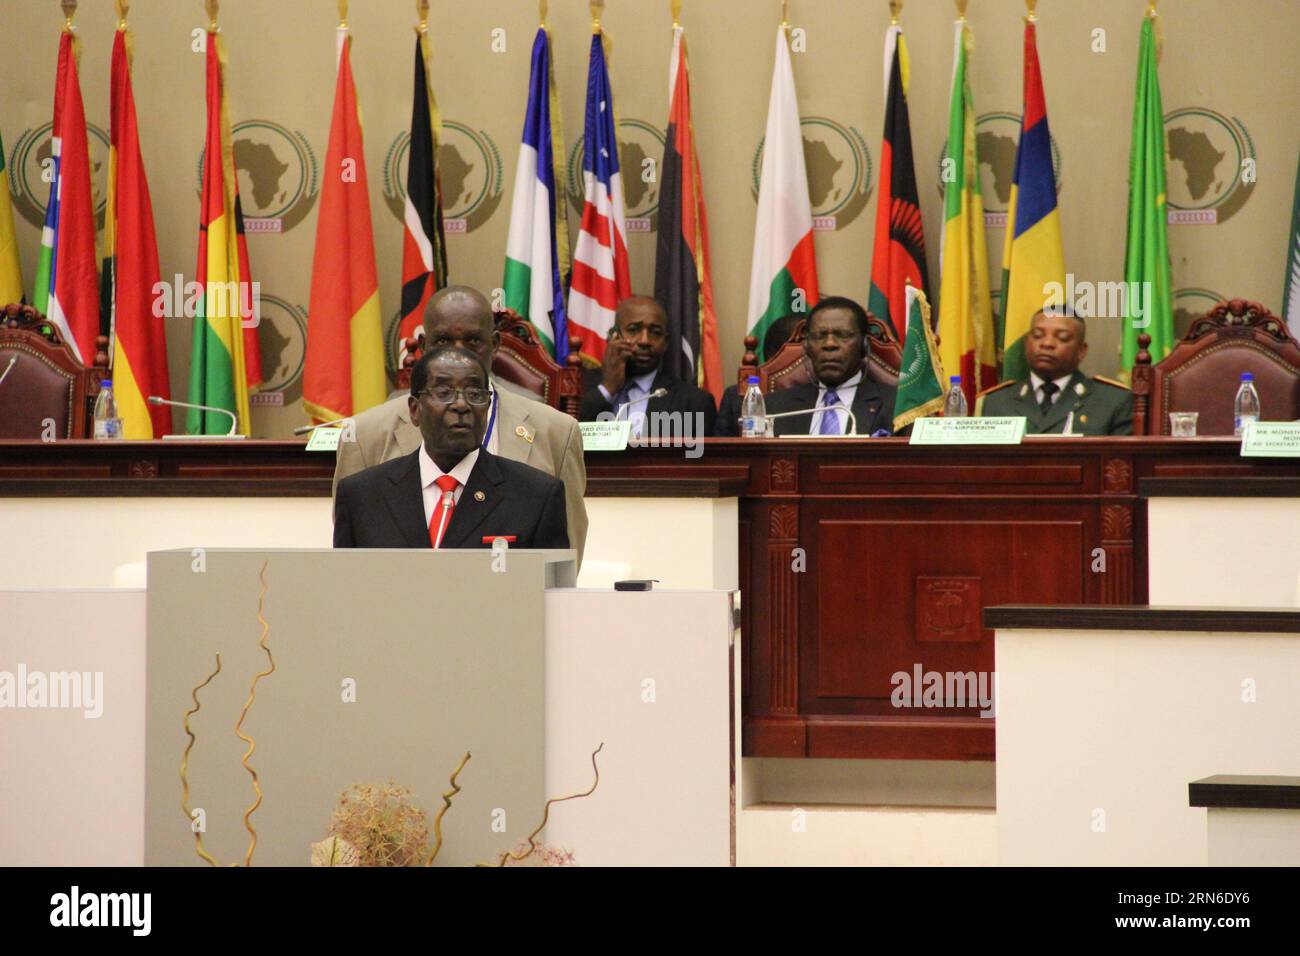 (150721) -- MALABO, 21. Juli 2015 -- Robert Mugabe, Präsident und Vorsitzender Simbabwes hält am 21. Juli 2015 eine Rede auf der Internationalen Konferenz über den Kampf Afrikas gegen Ebola in Malabo, Hauptstadt Äquatorialguineas. Afrikanische Länder sollten ihre Anstrengungen zur Mobilisierung von Ressourcen und zur Erhöhung der Investitionen verstärken, um die Widerstandsfähigkeit des Gesundheitssektors zu verbessern, sagten hochrangige Vertreter der Afrikanischen Union (AU) am Dienstag. ) ÄQUATORIALGUINEA-MALABO-AU-KONFERENZ-EBOLA DENGXYAOMIN PUBLICATIONXNOTXINXCHN Stockfoto